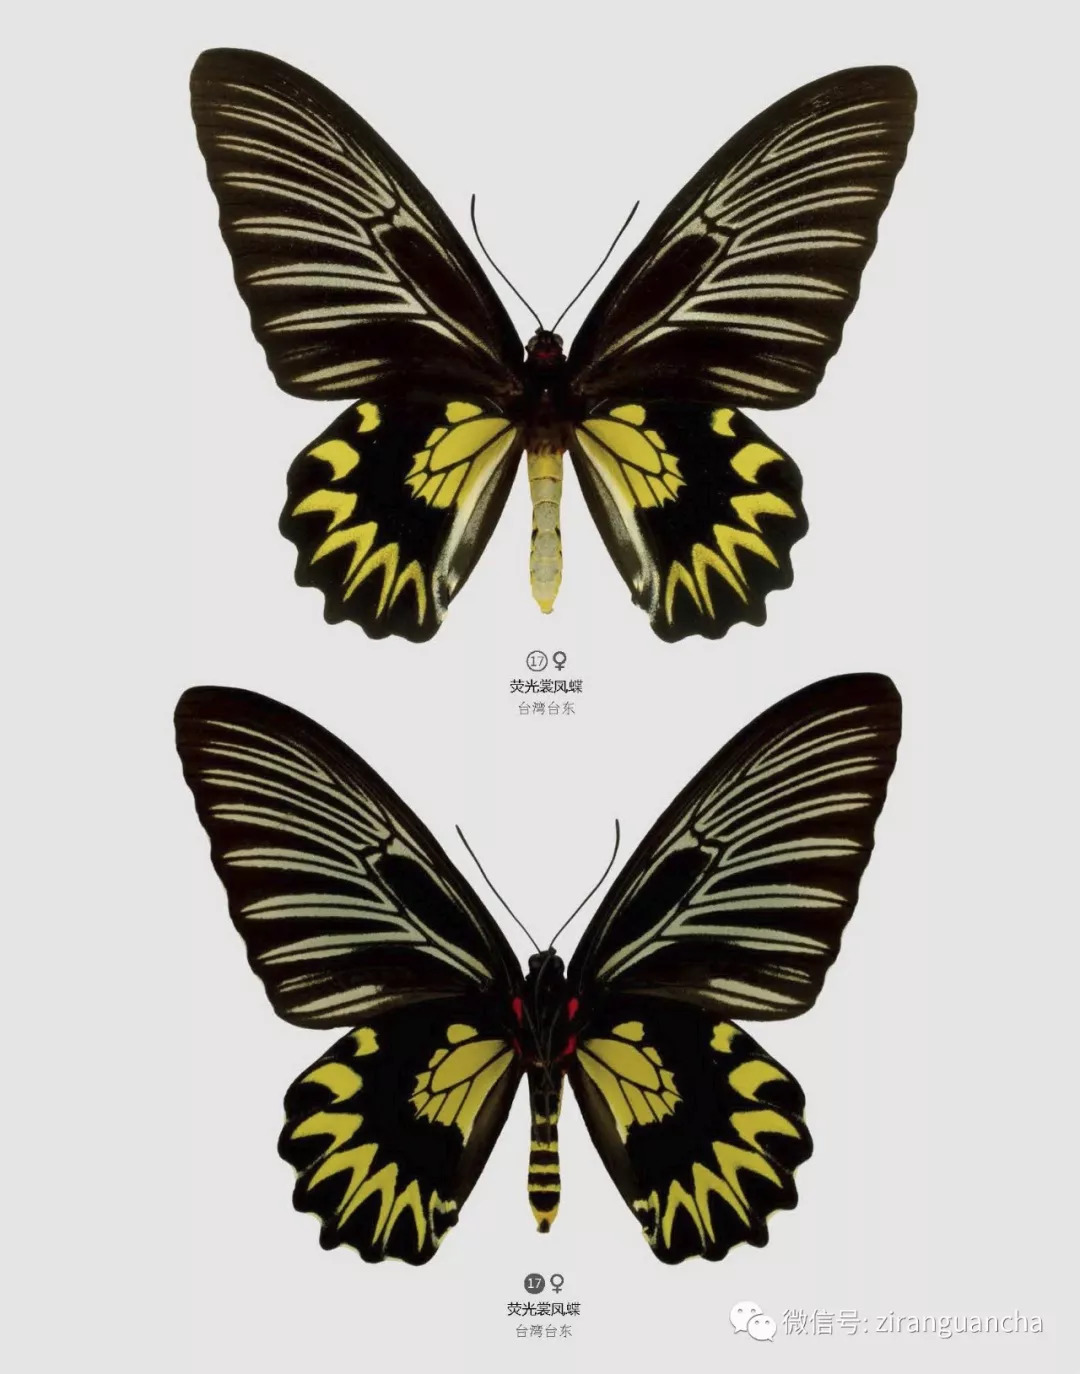 很多人喜欢蝴蝶可又有几人认识中国的珍稀蝴蝶